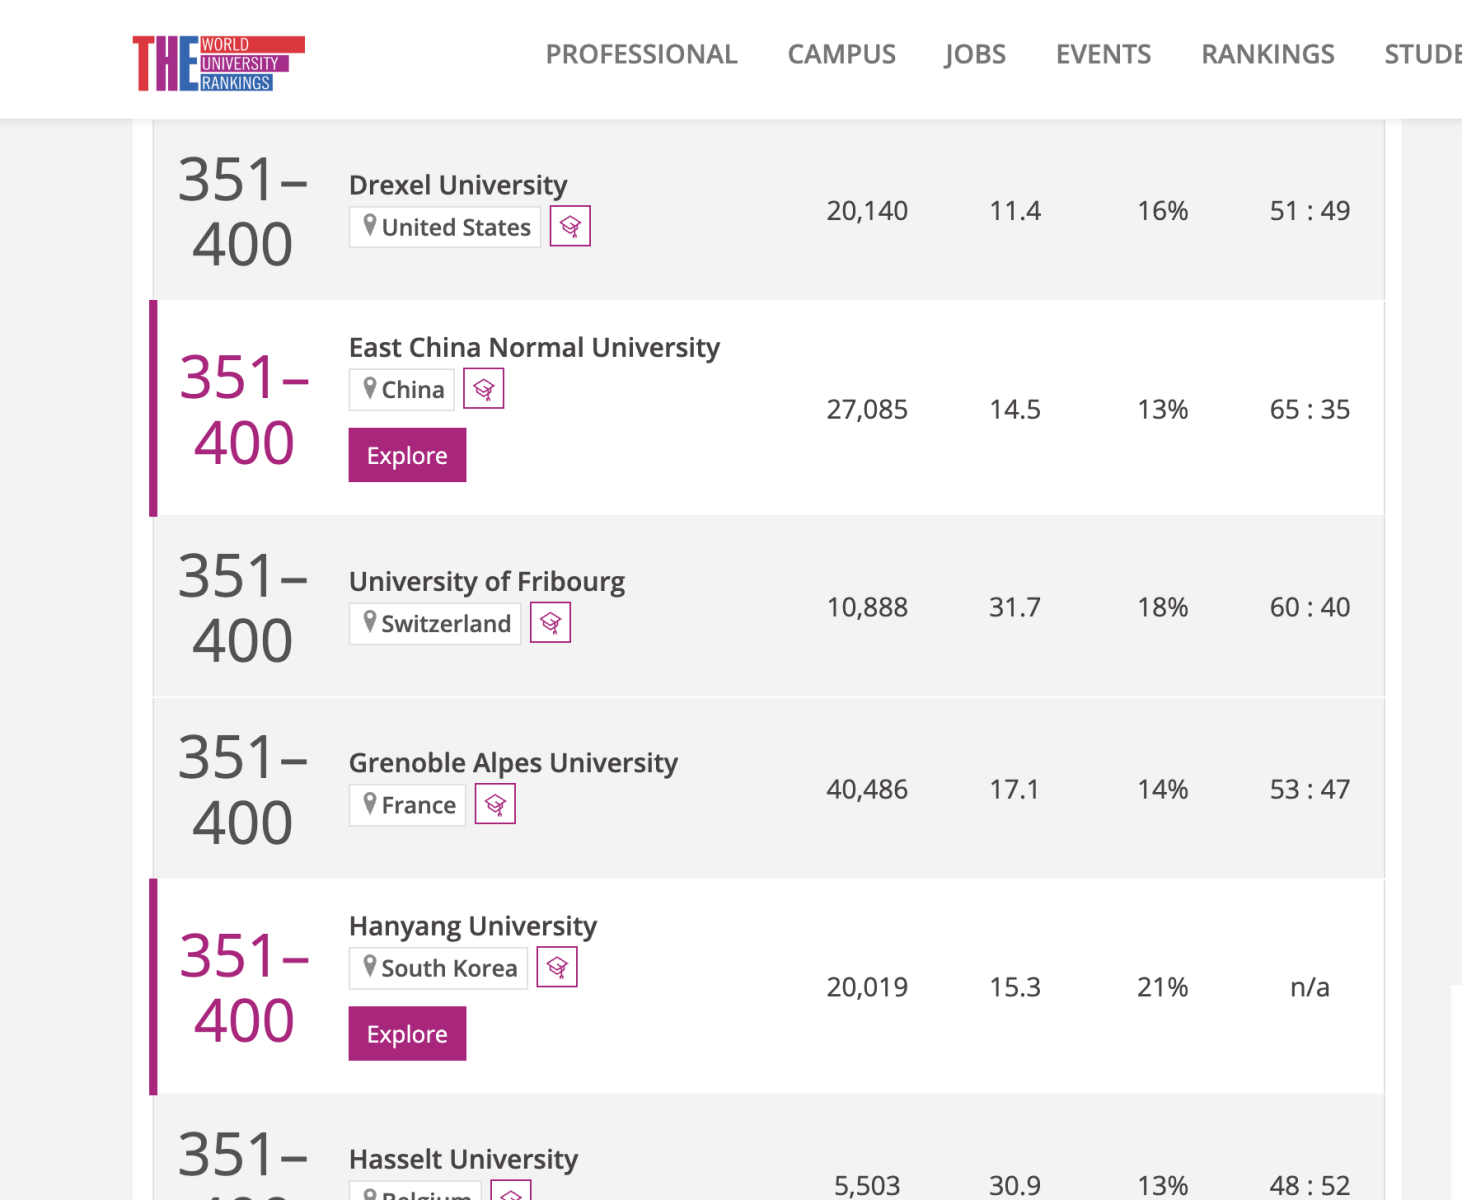 Trường Đại học Fribourg nằm trong top 400 trường đại học uy tín theo xếp hạng mới nhất của Times Higher Education